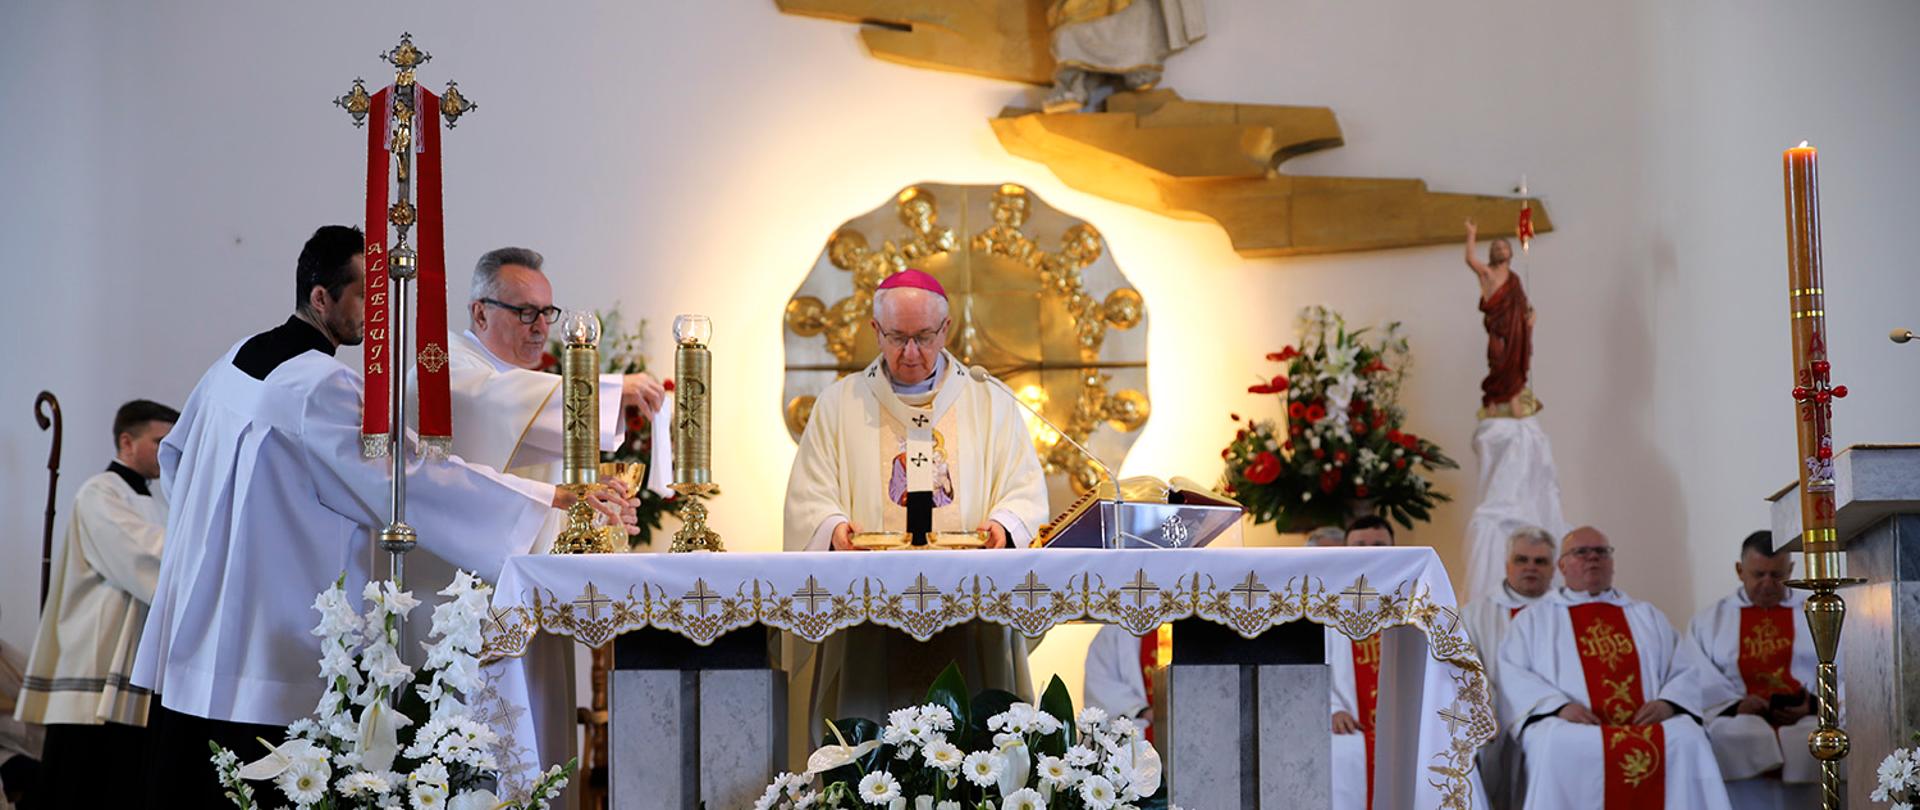 Zdjęcie przedstawia ozdobiony kwiatami stół ofiarny przy którym Arcybiskup prowadzi liturgię. W tle znajduje się podświetlony ołtarz.